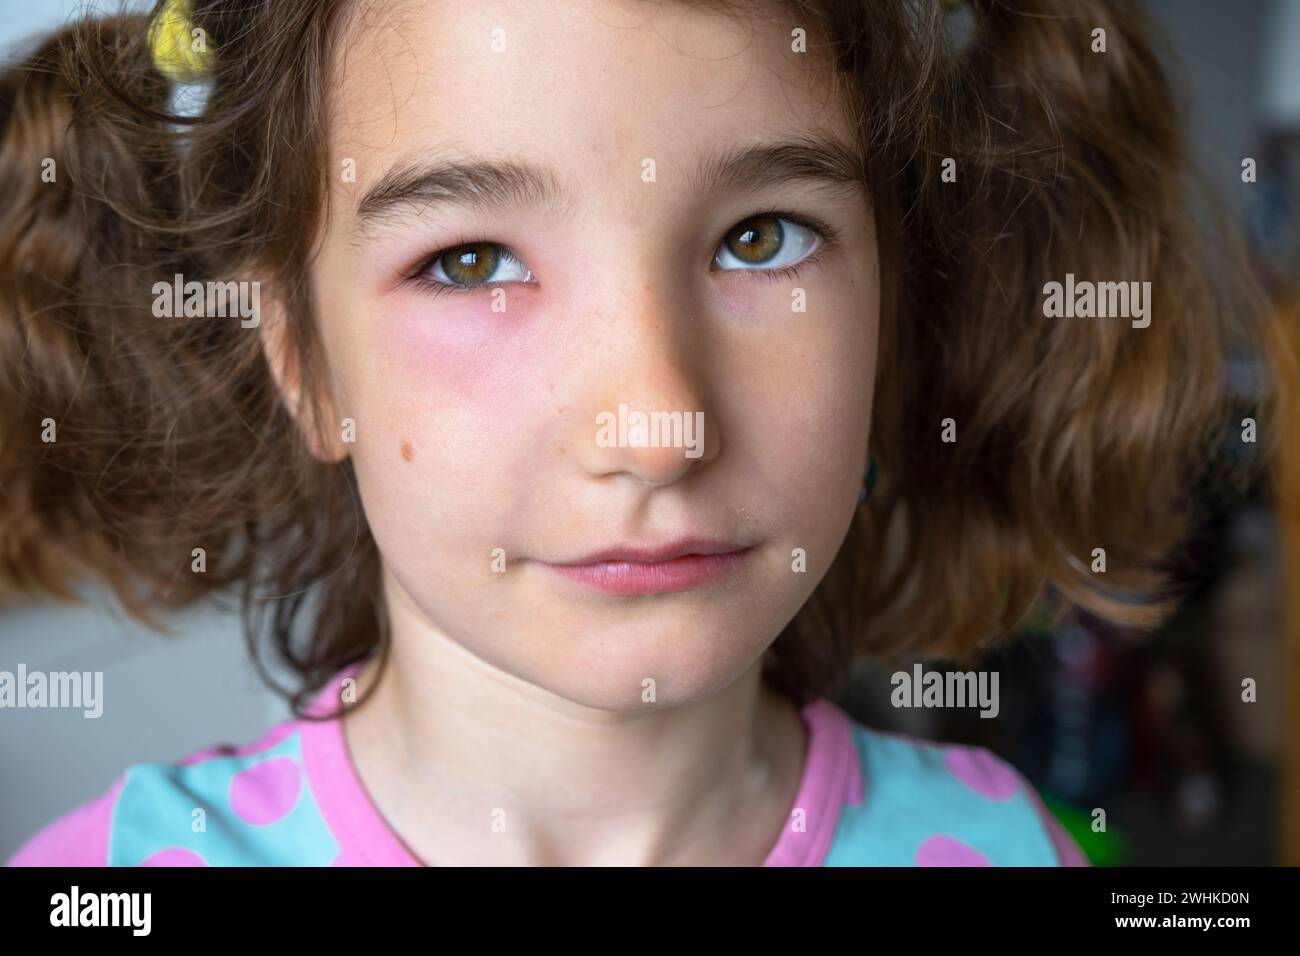 Ein rotes geschwollenes Augenlid auf einem Kindergesicht in Nahaufnahme ist eine Allergie gegen einen Insektenbiss. Allergische Reaktion auf blutsaugende Insekten Stockfoto